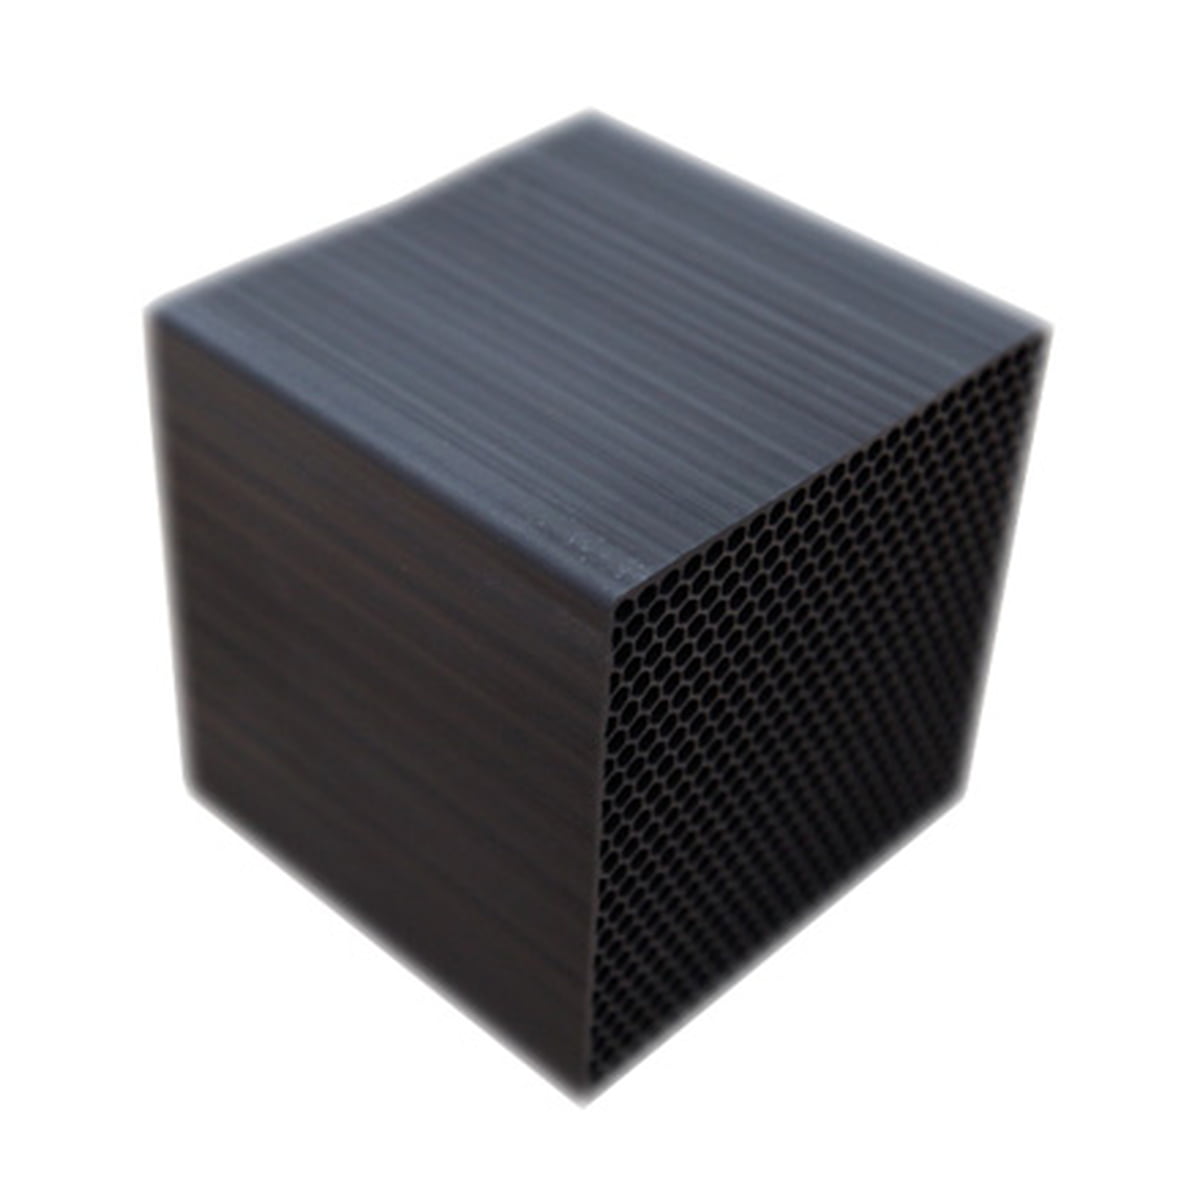 Cube air. Кубик черный стекло 200мм. Черный матовый куб. Черный куб пластиковый декоративный. Неруский чёрный куб.